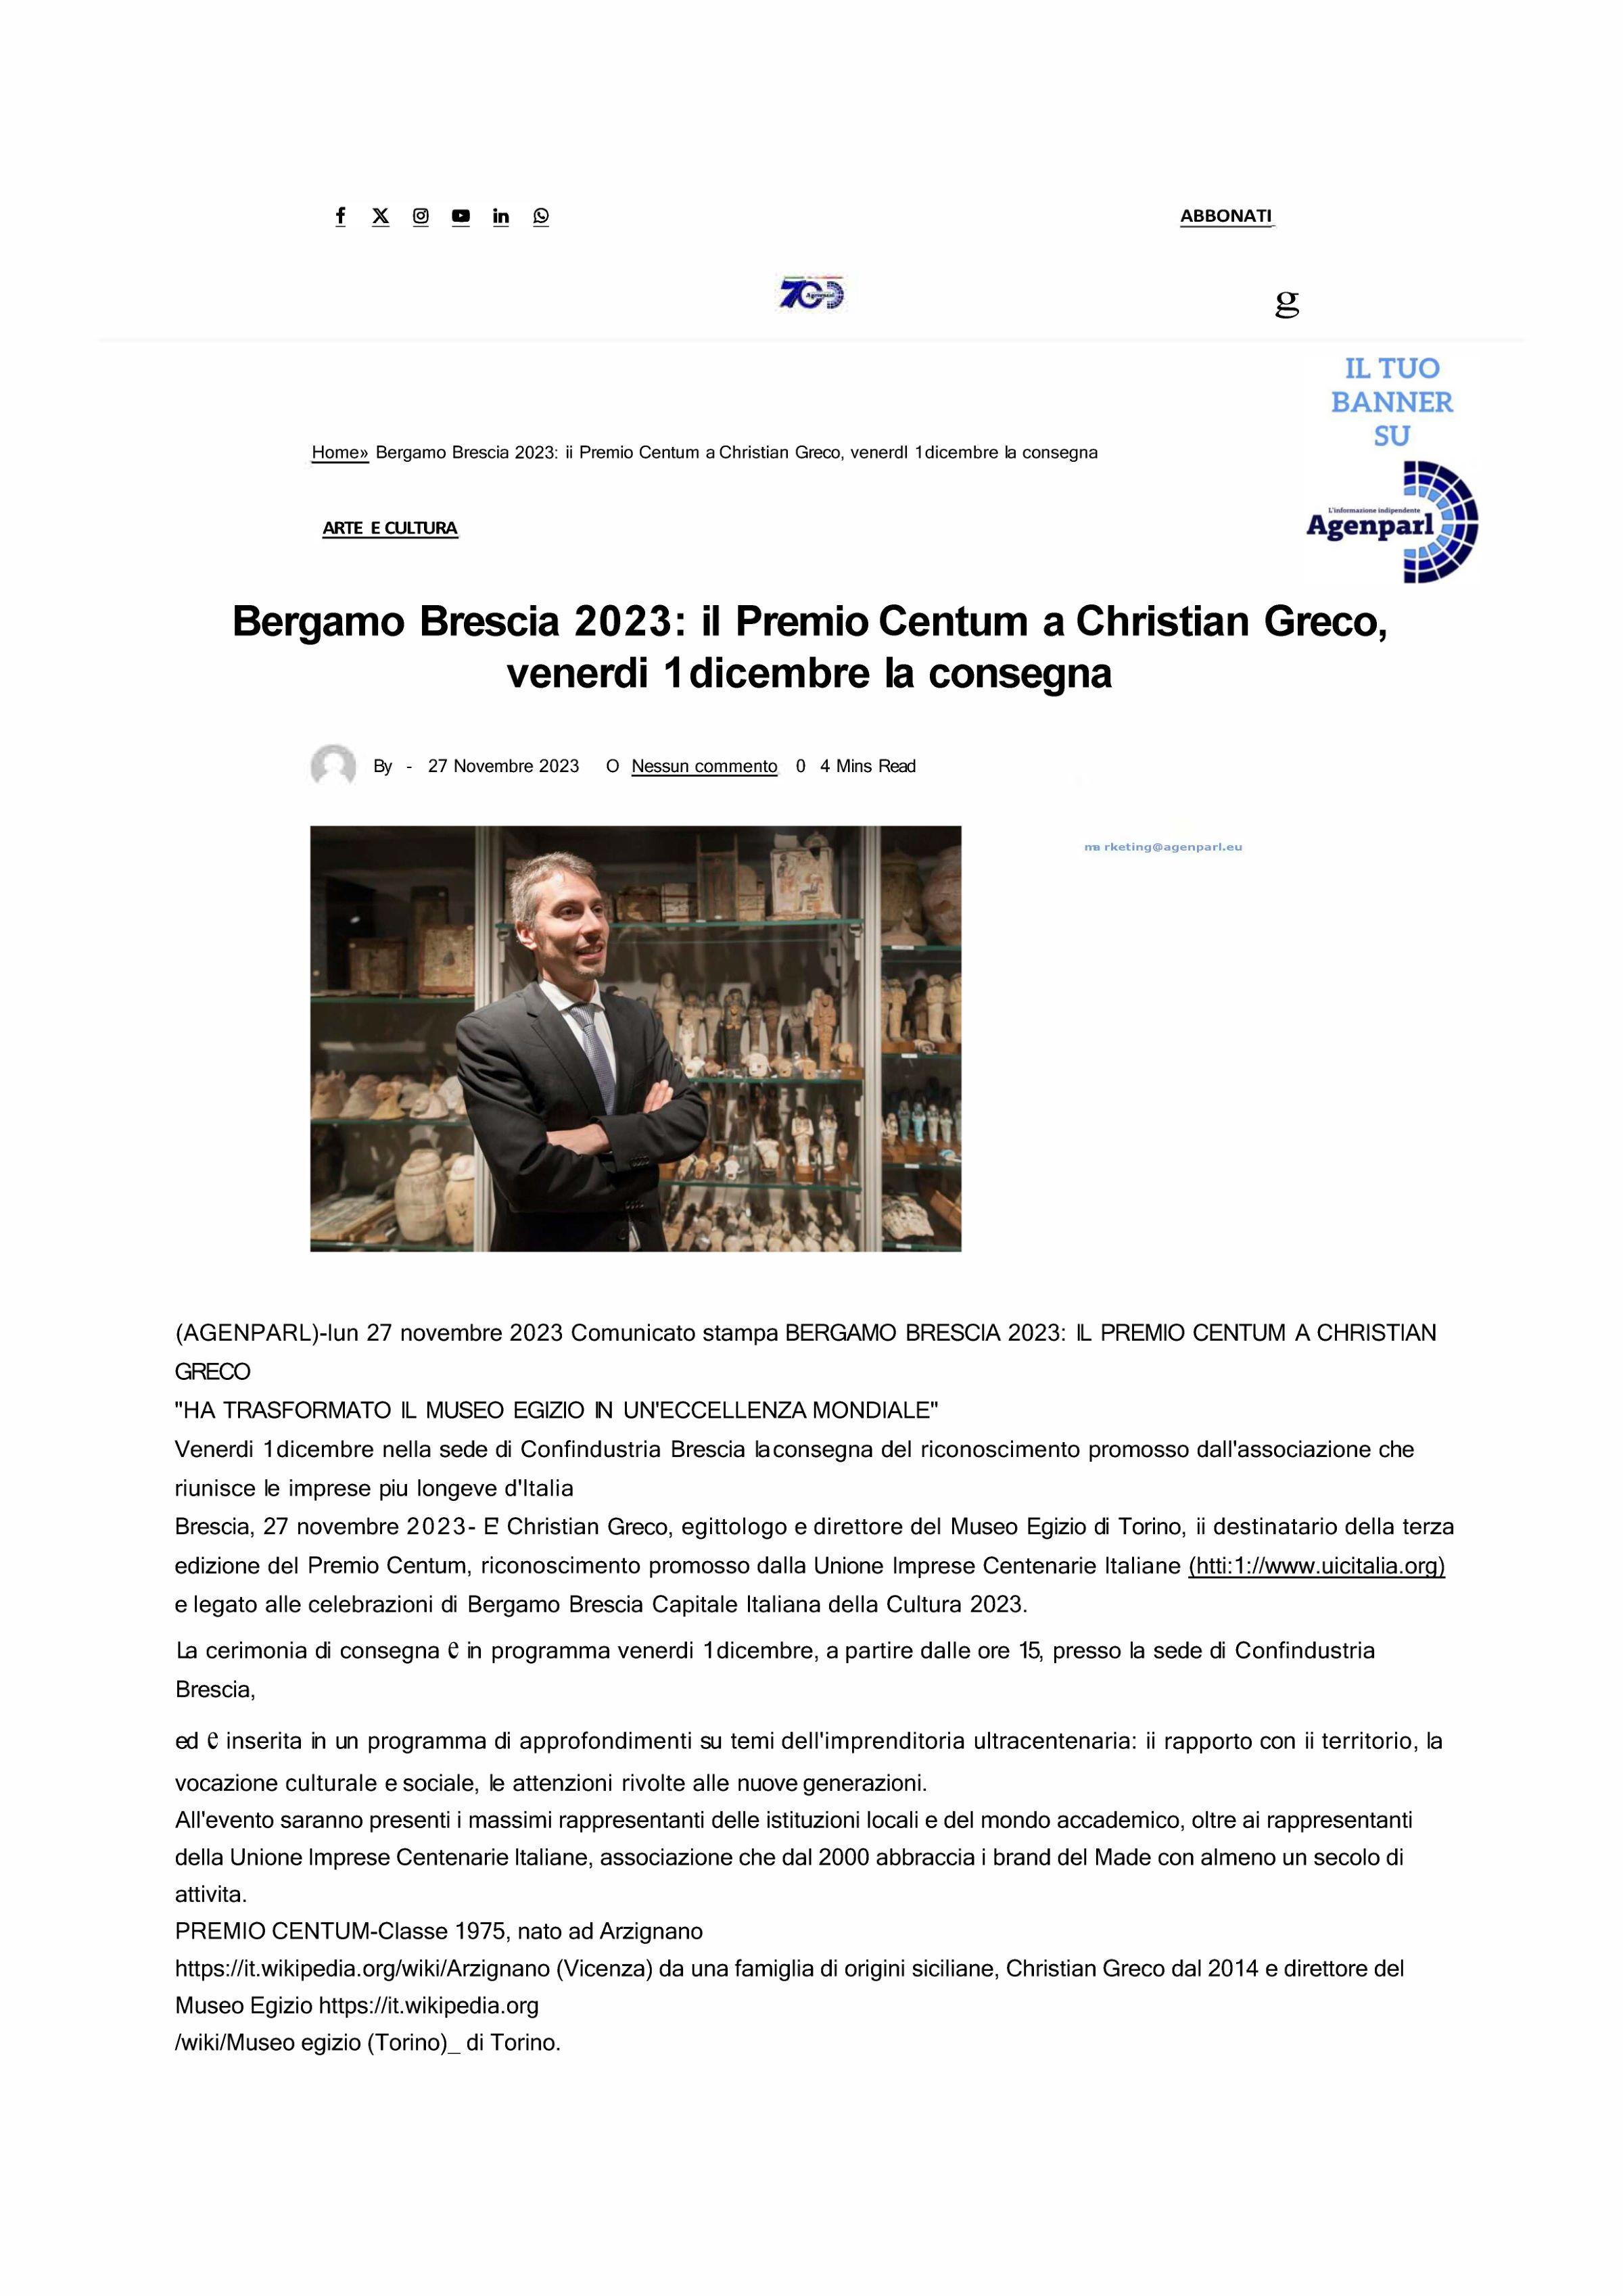 Agenparl Bergamo Brescia 2023 il Premio Centum a Christian Greco 27 novembre 2023 Pagina 1 1